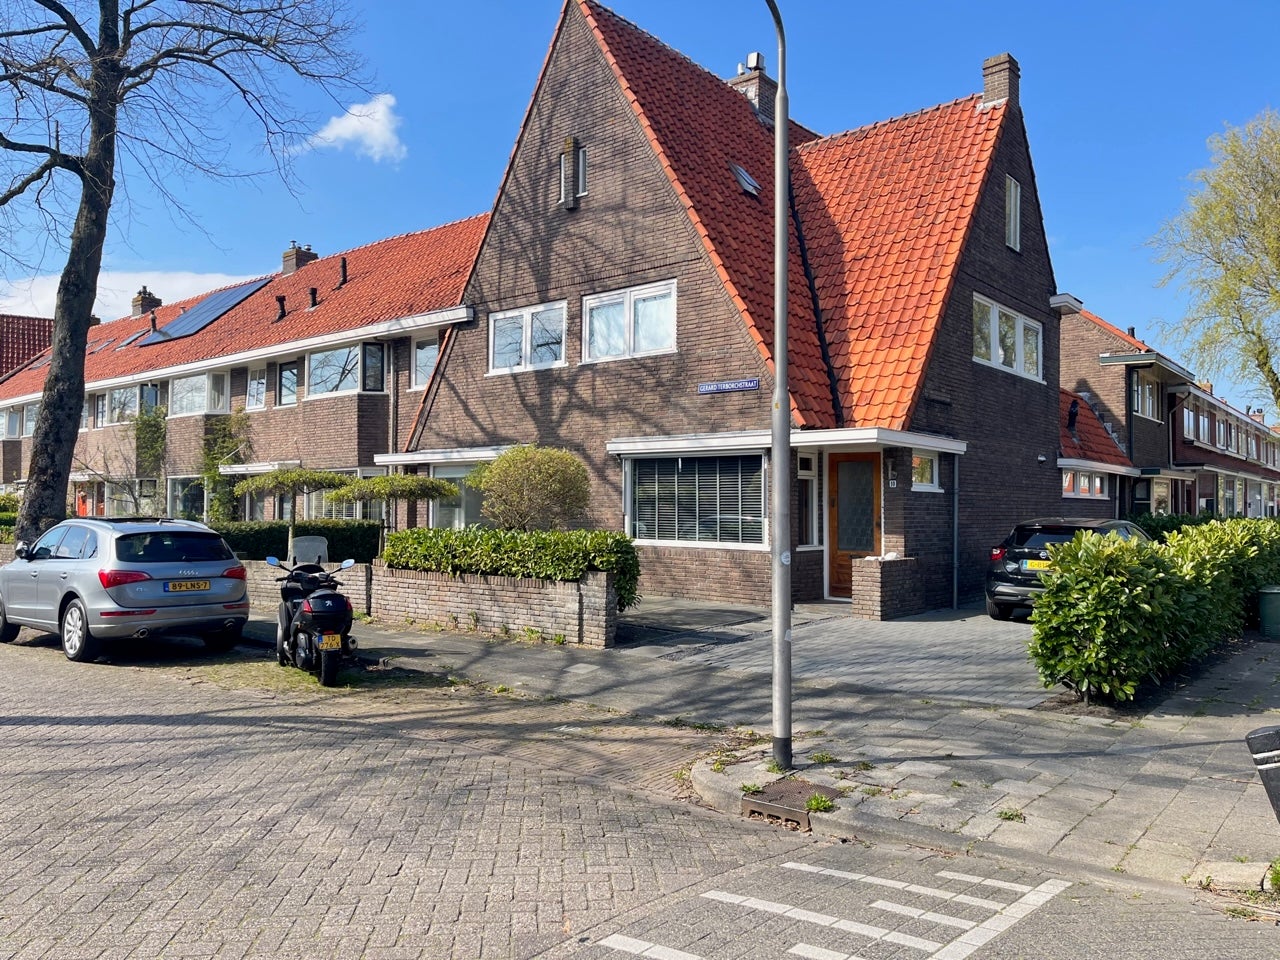 Bekijk foto 1/61 van house in Leeuwarden